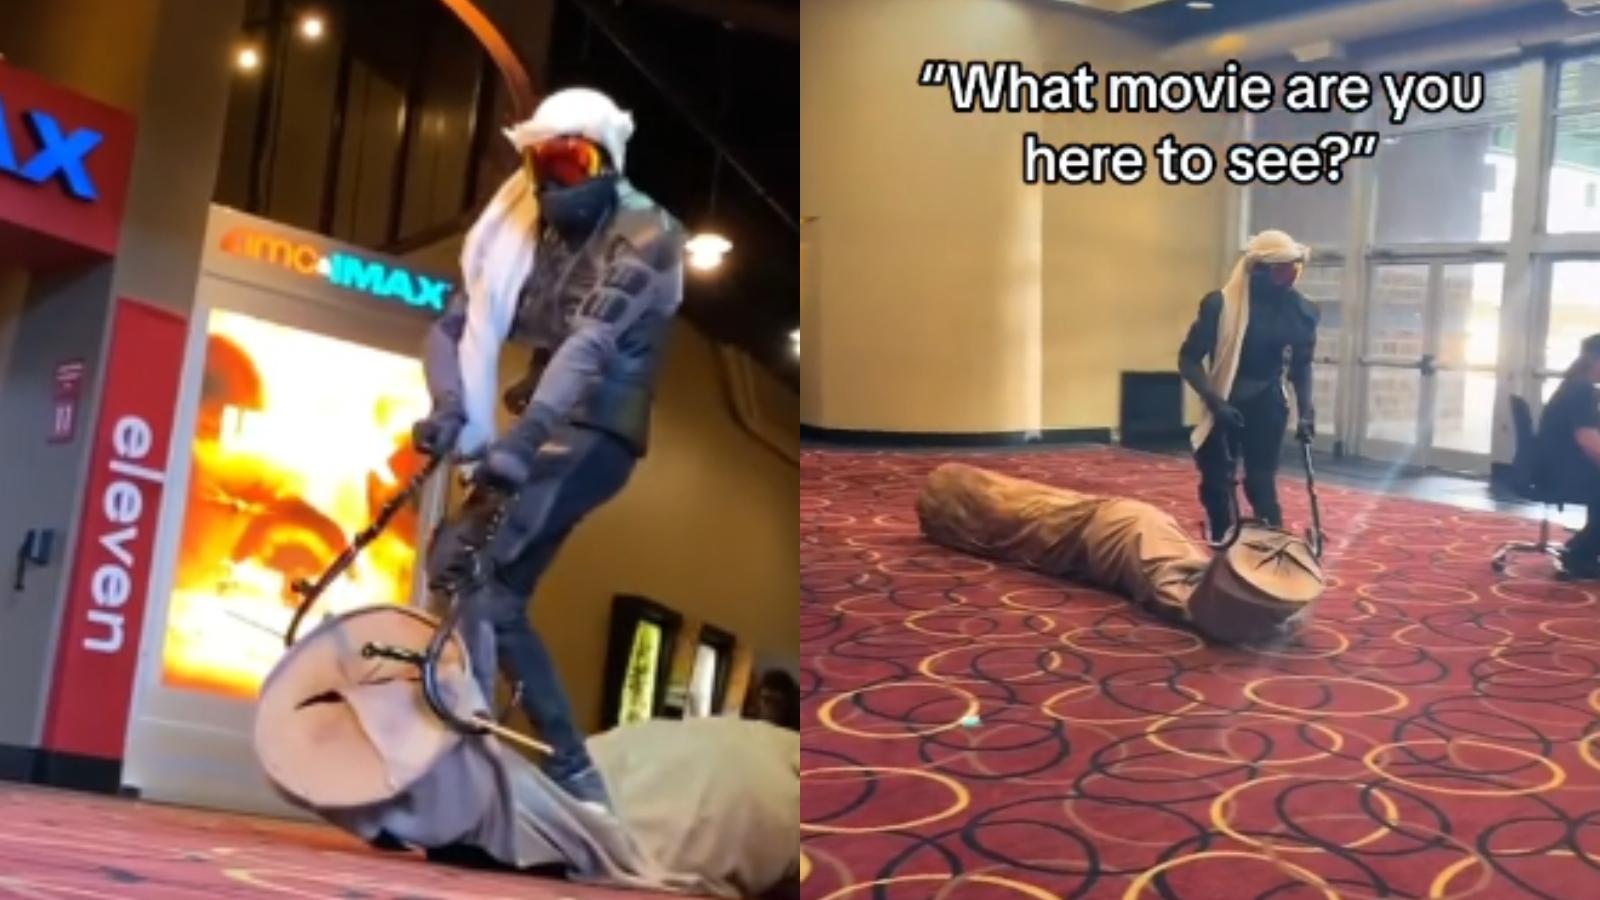 dune 2 cosplayer rides sandworm in cinema